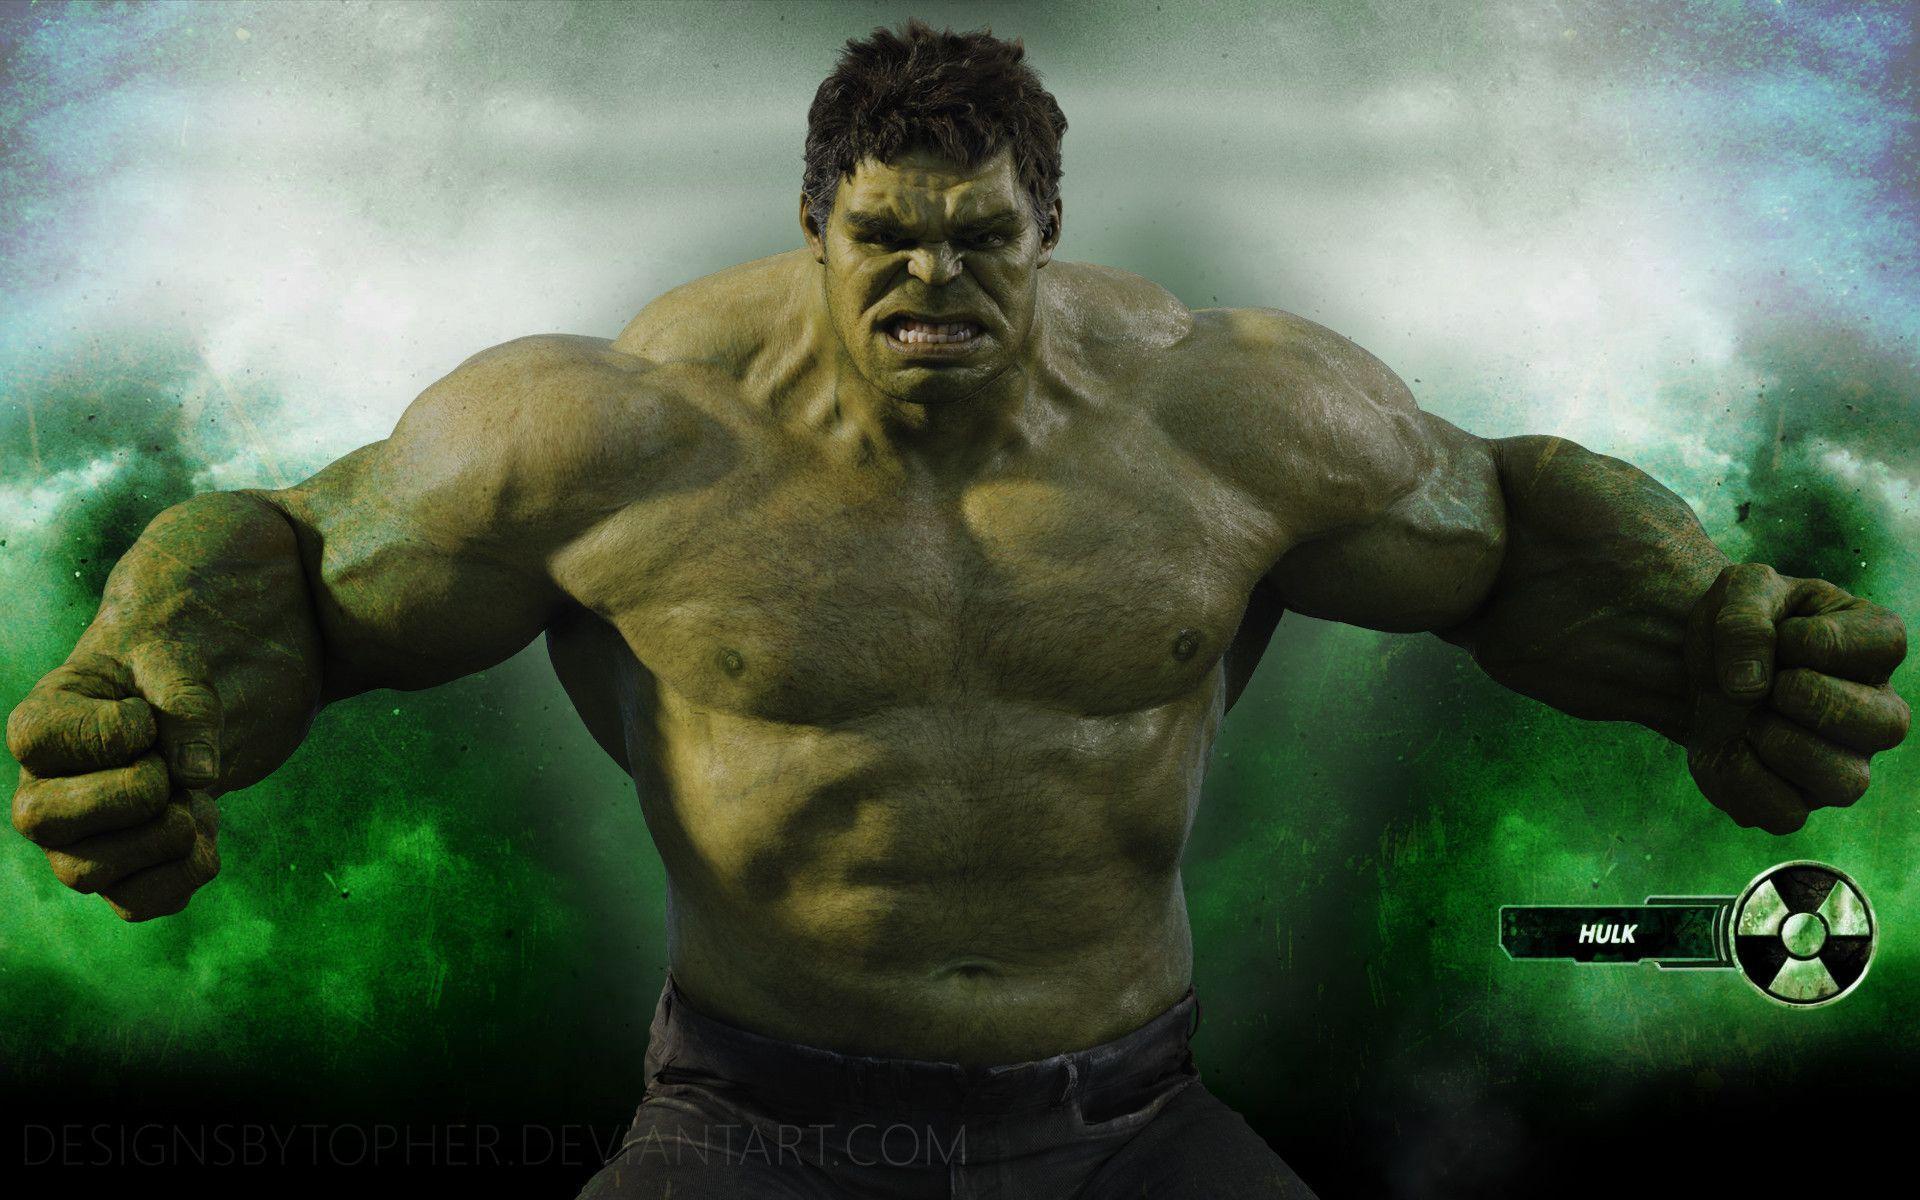 Hulk 3 Movie